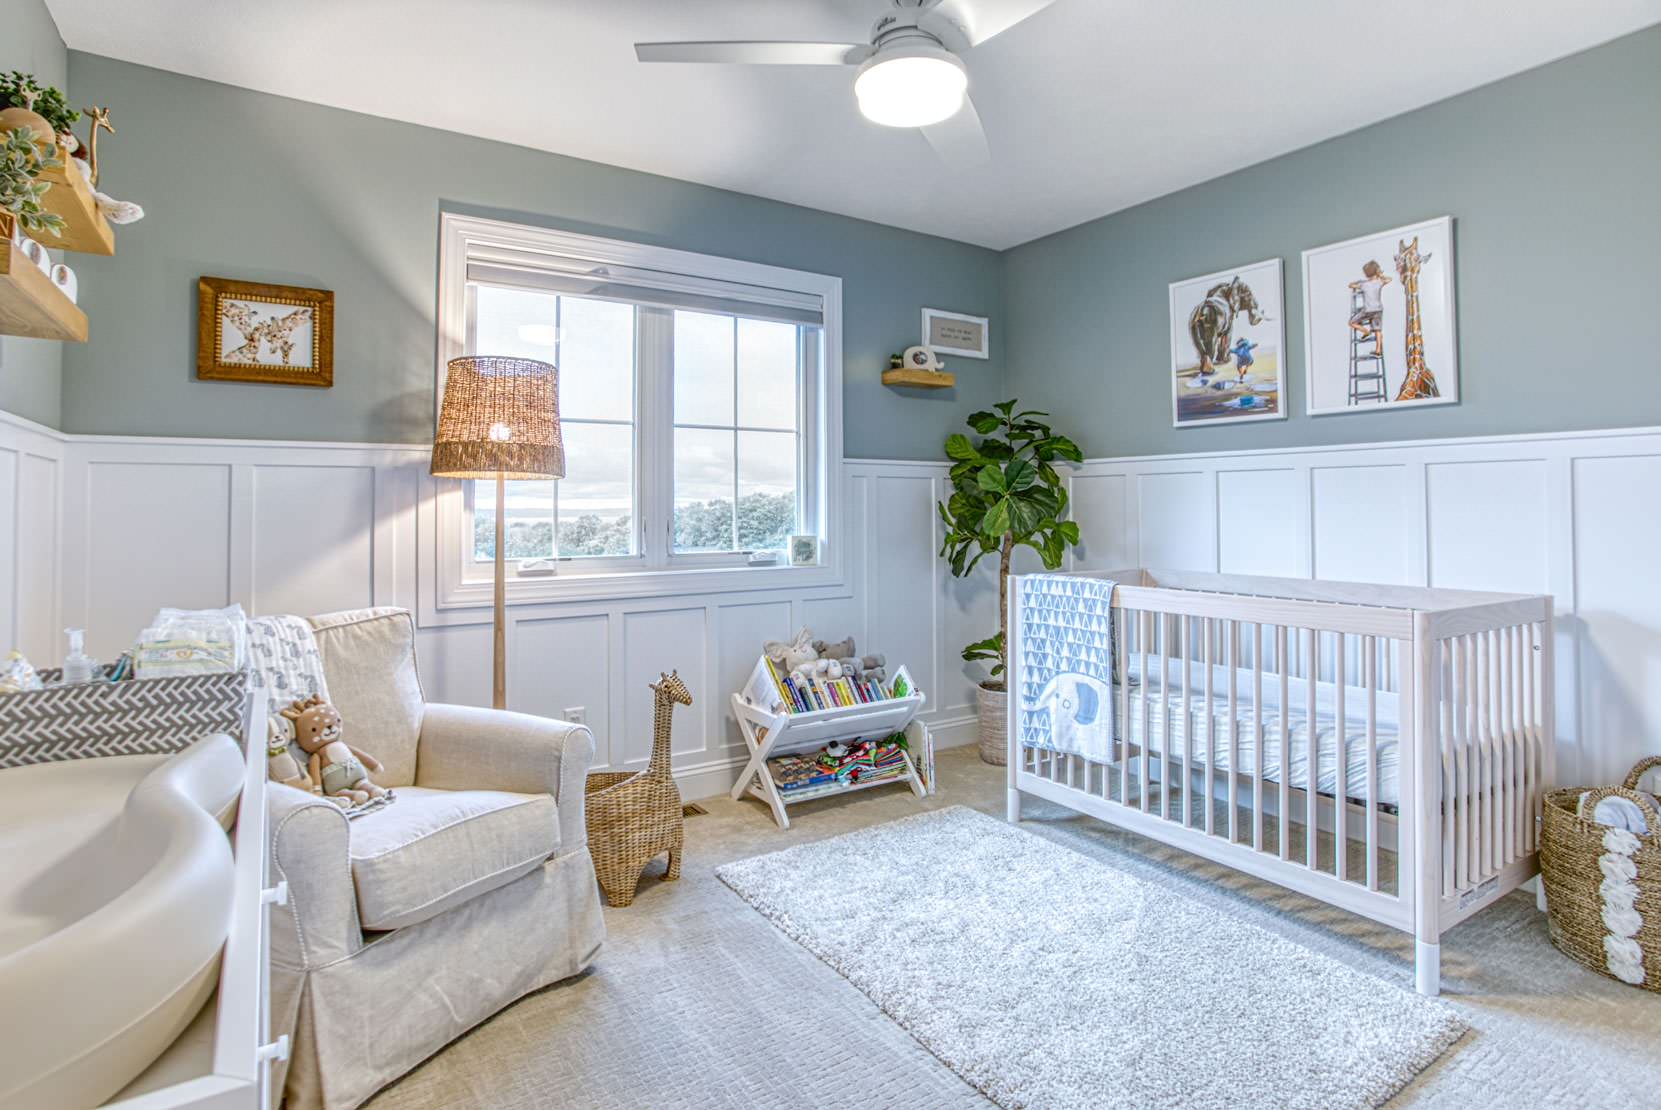 Fotos de habitaciones de bebé  Diseños de habitaciones de bebé